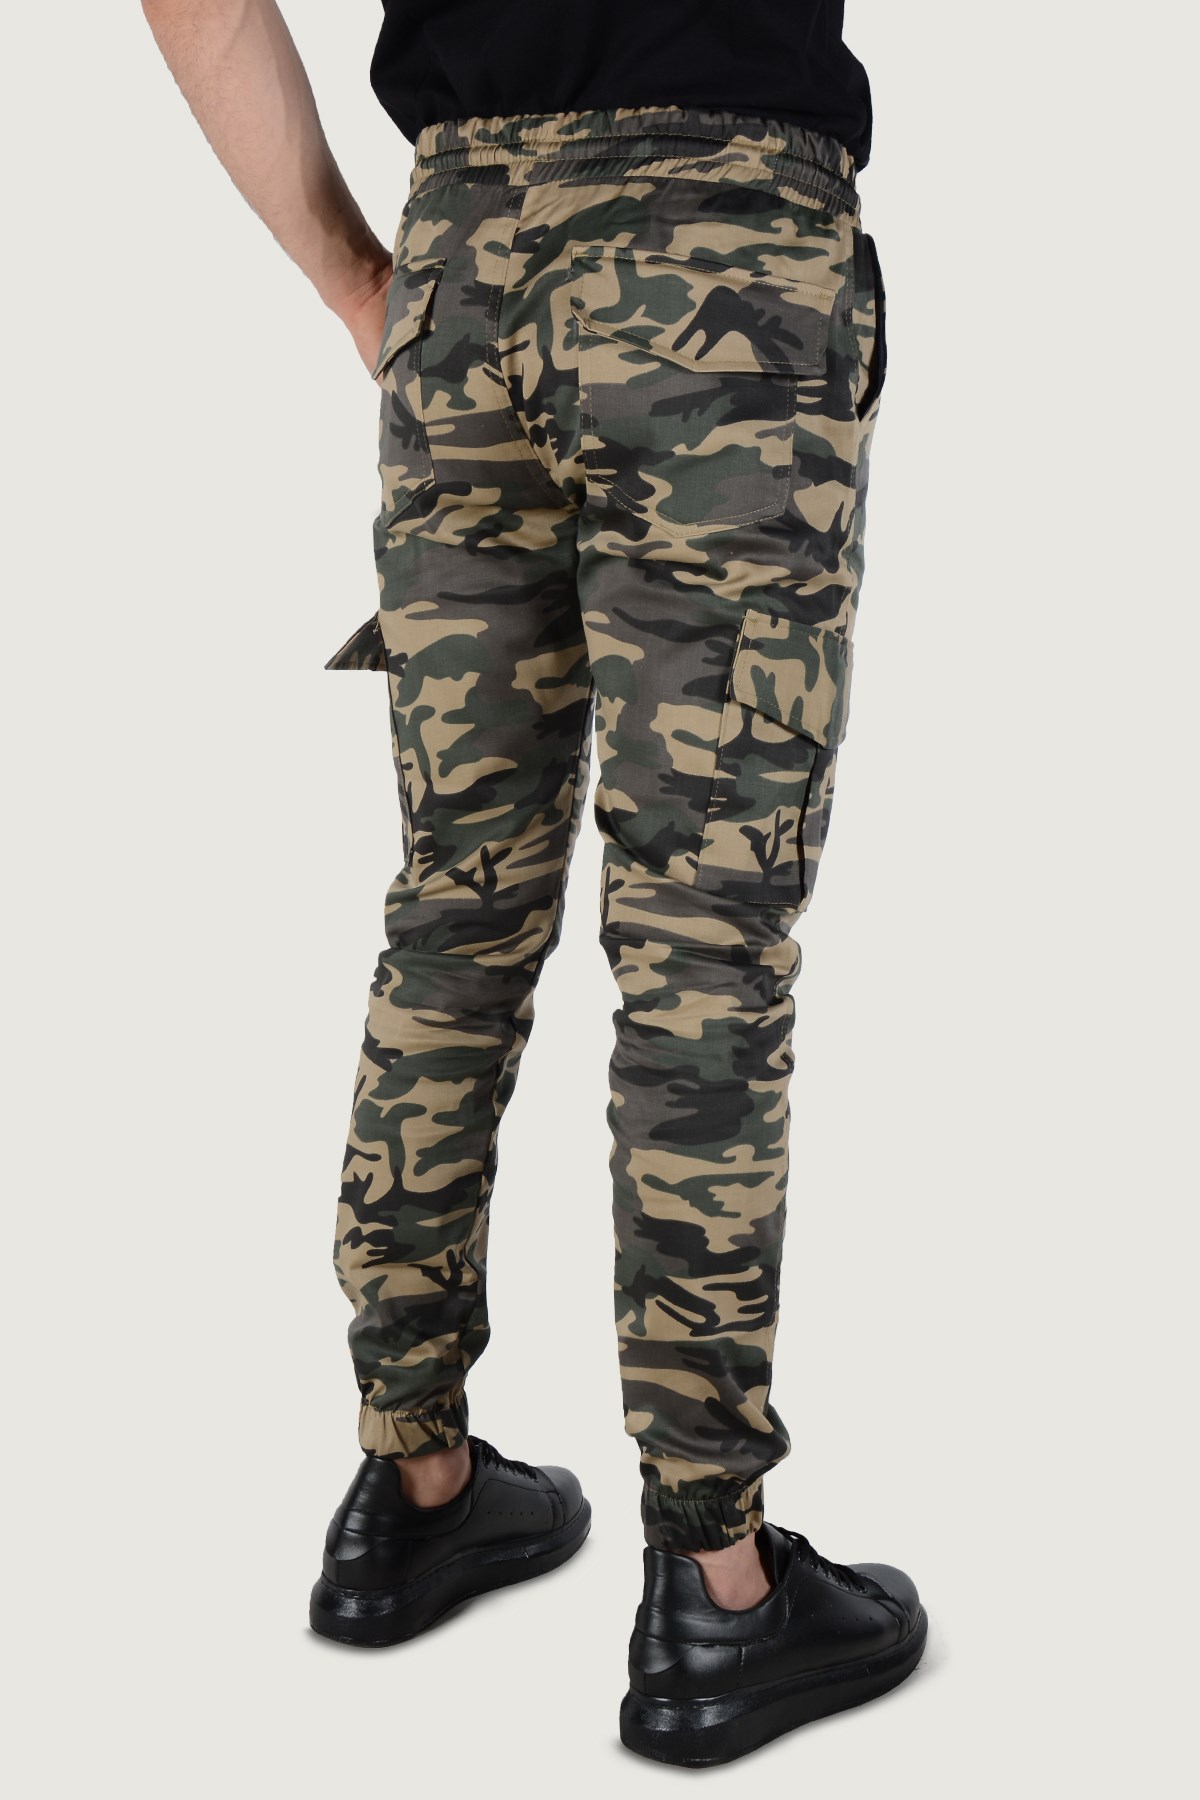 Erkek Askeri Desenli Kargo Cep Pantolon 20K-2600026 Haki | Terapi Giyim